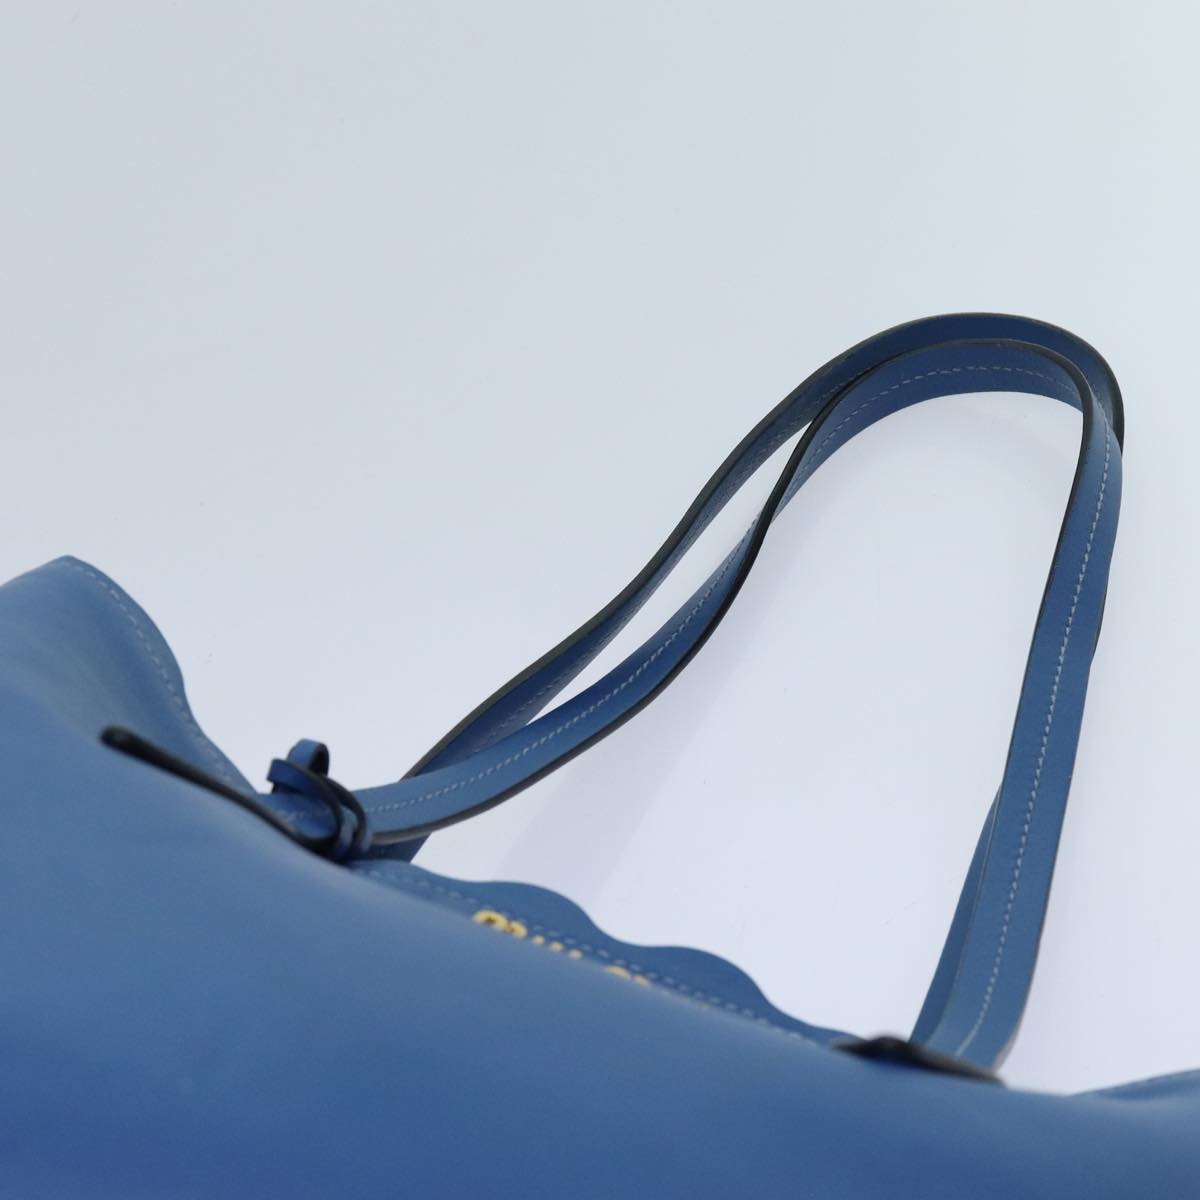 Miu Miu Tote Bag Leather Blue Auth hk1226